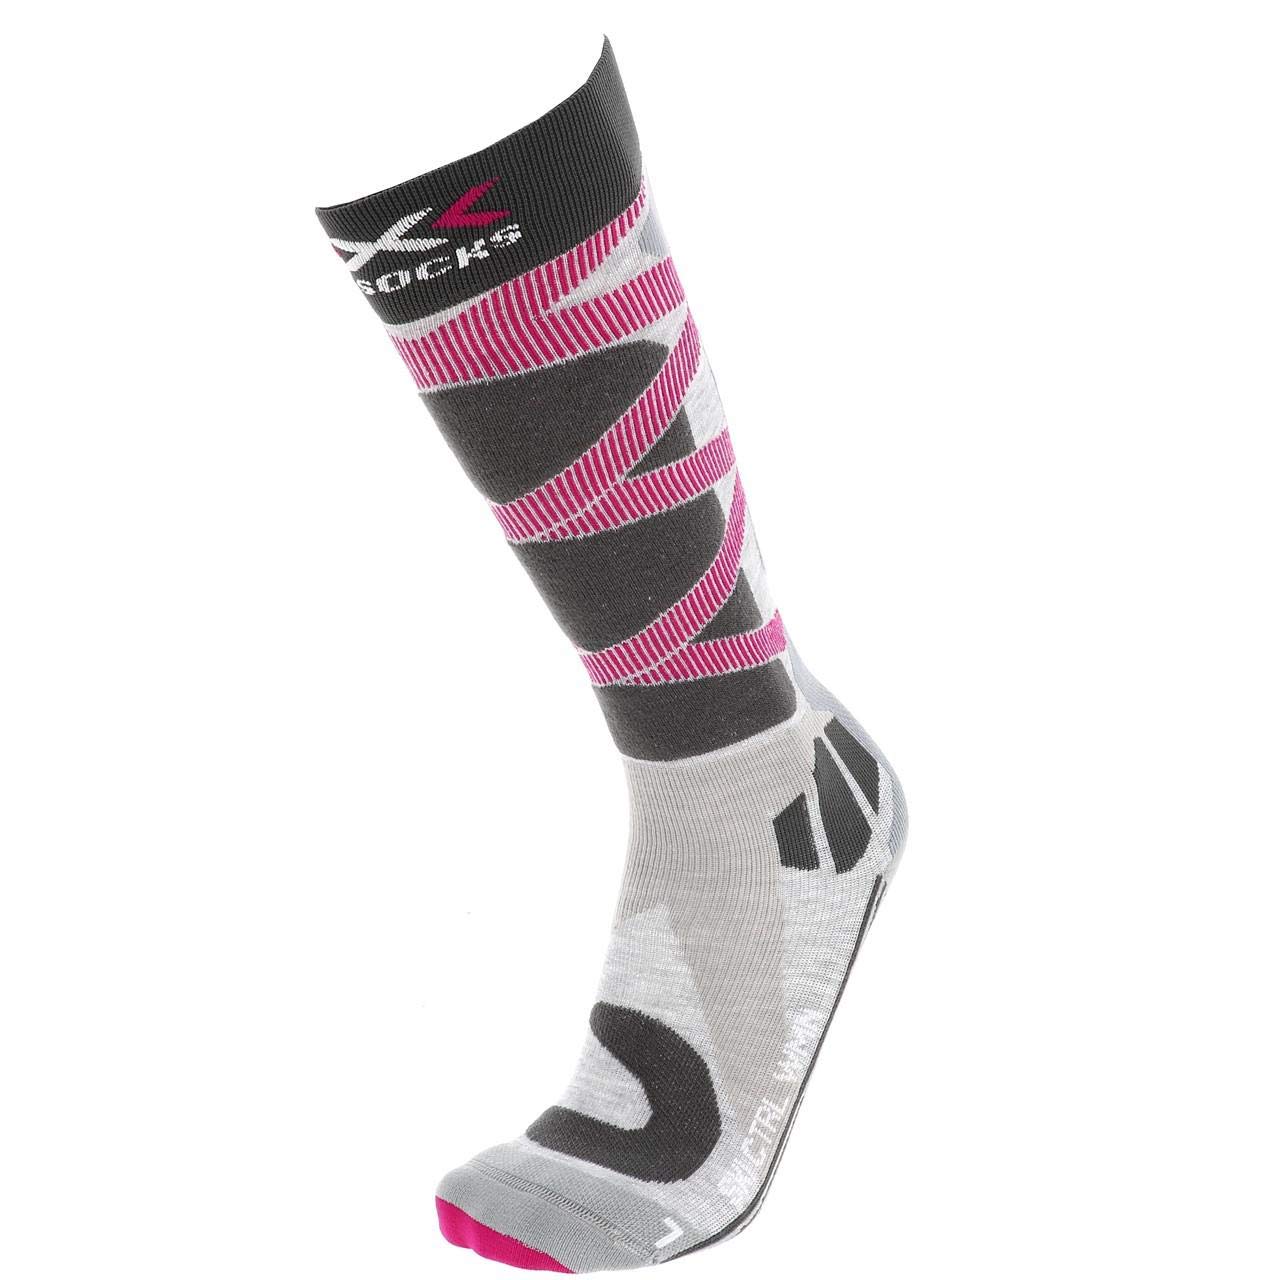 Populaire X-Socks Chaussettes Ski Control 4.0 Lady Chaussettes de ski Femme Gris/Rose FR : M (Taille Fabricant : M(39-40)) 3xFjpB3sY tout pour vous